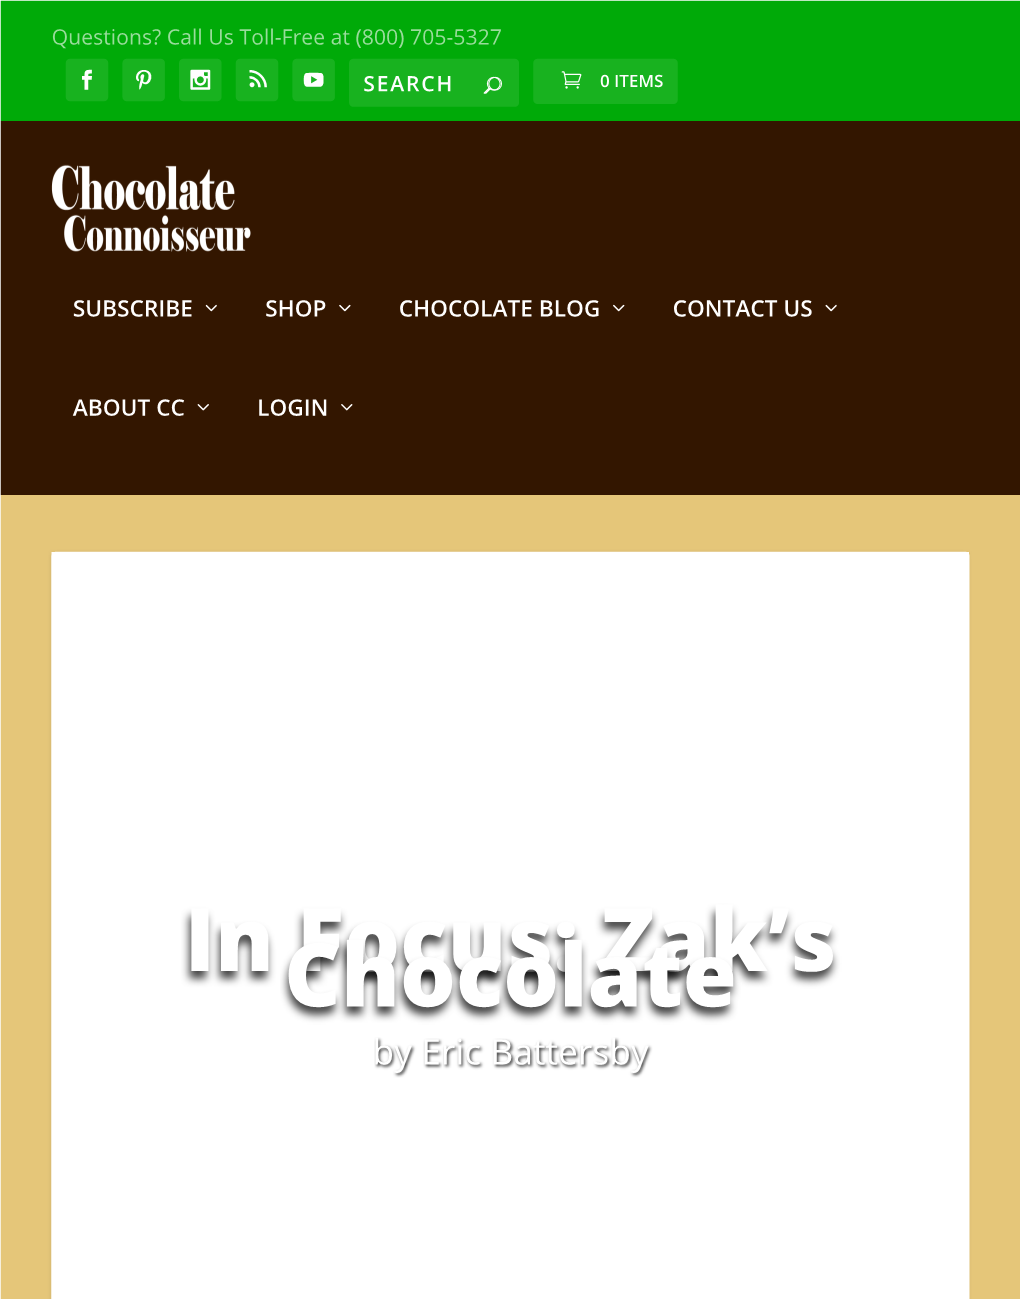 In Focus: Zak's Chocolate